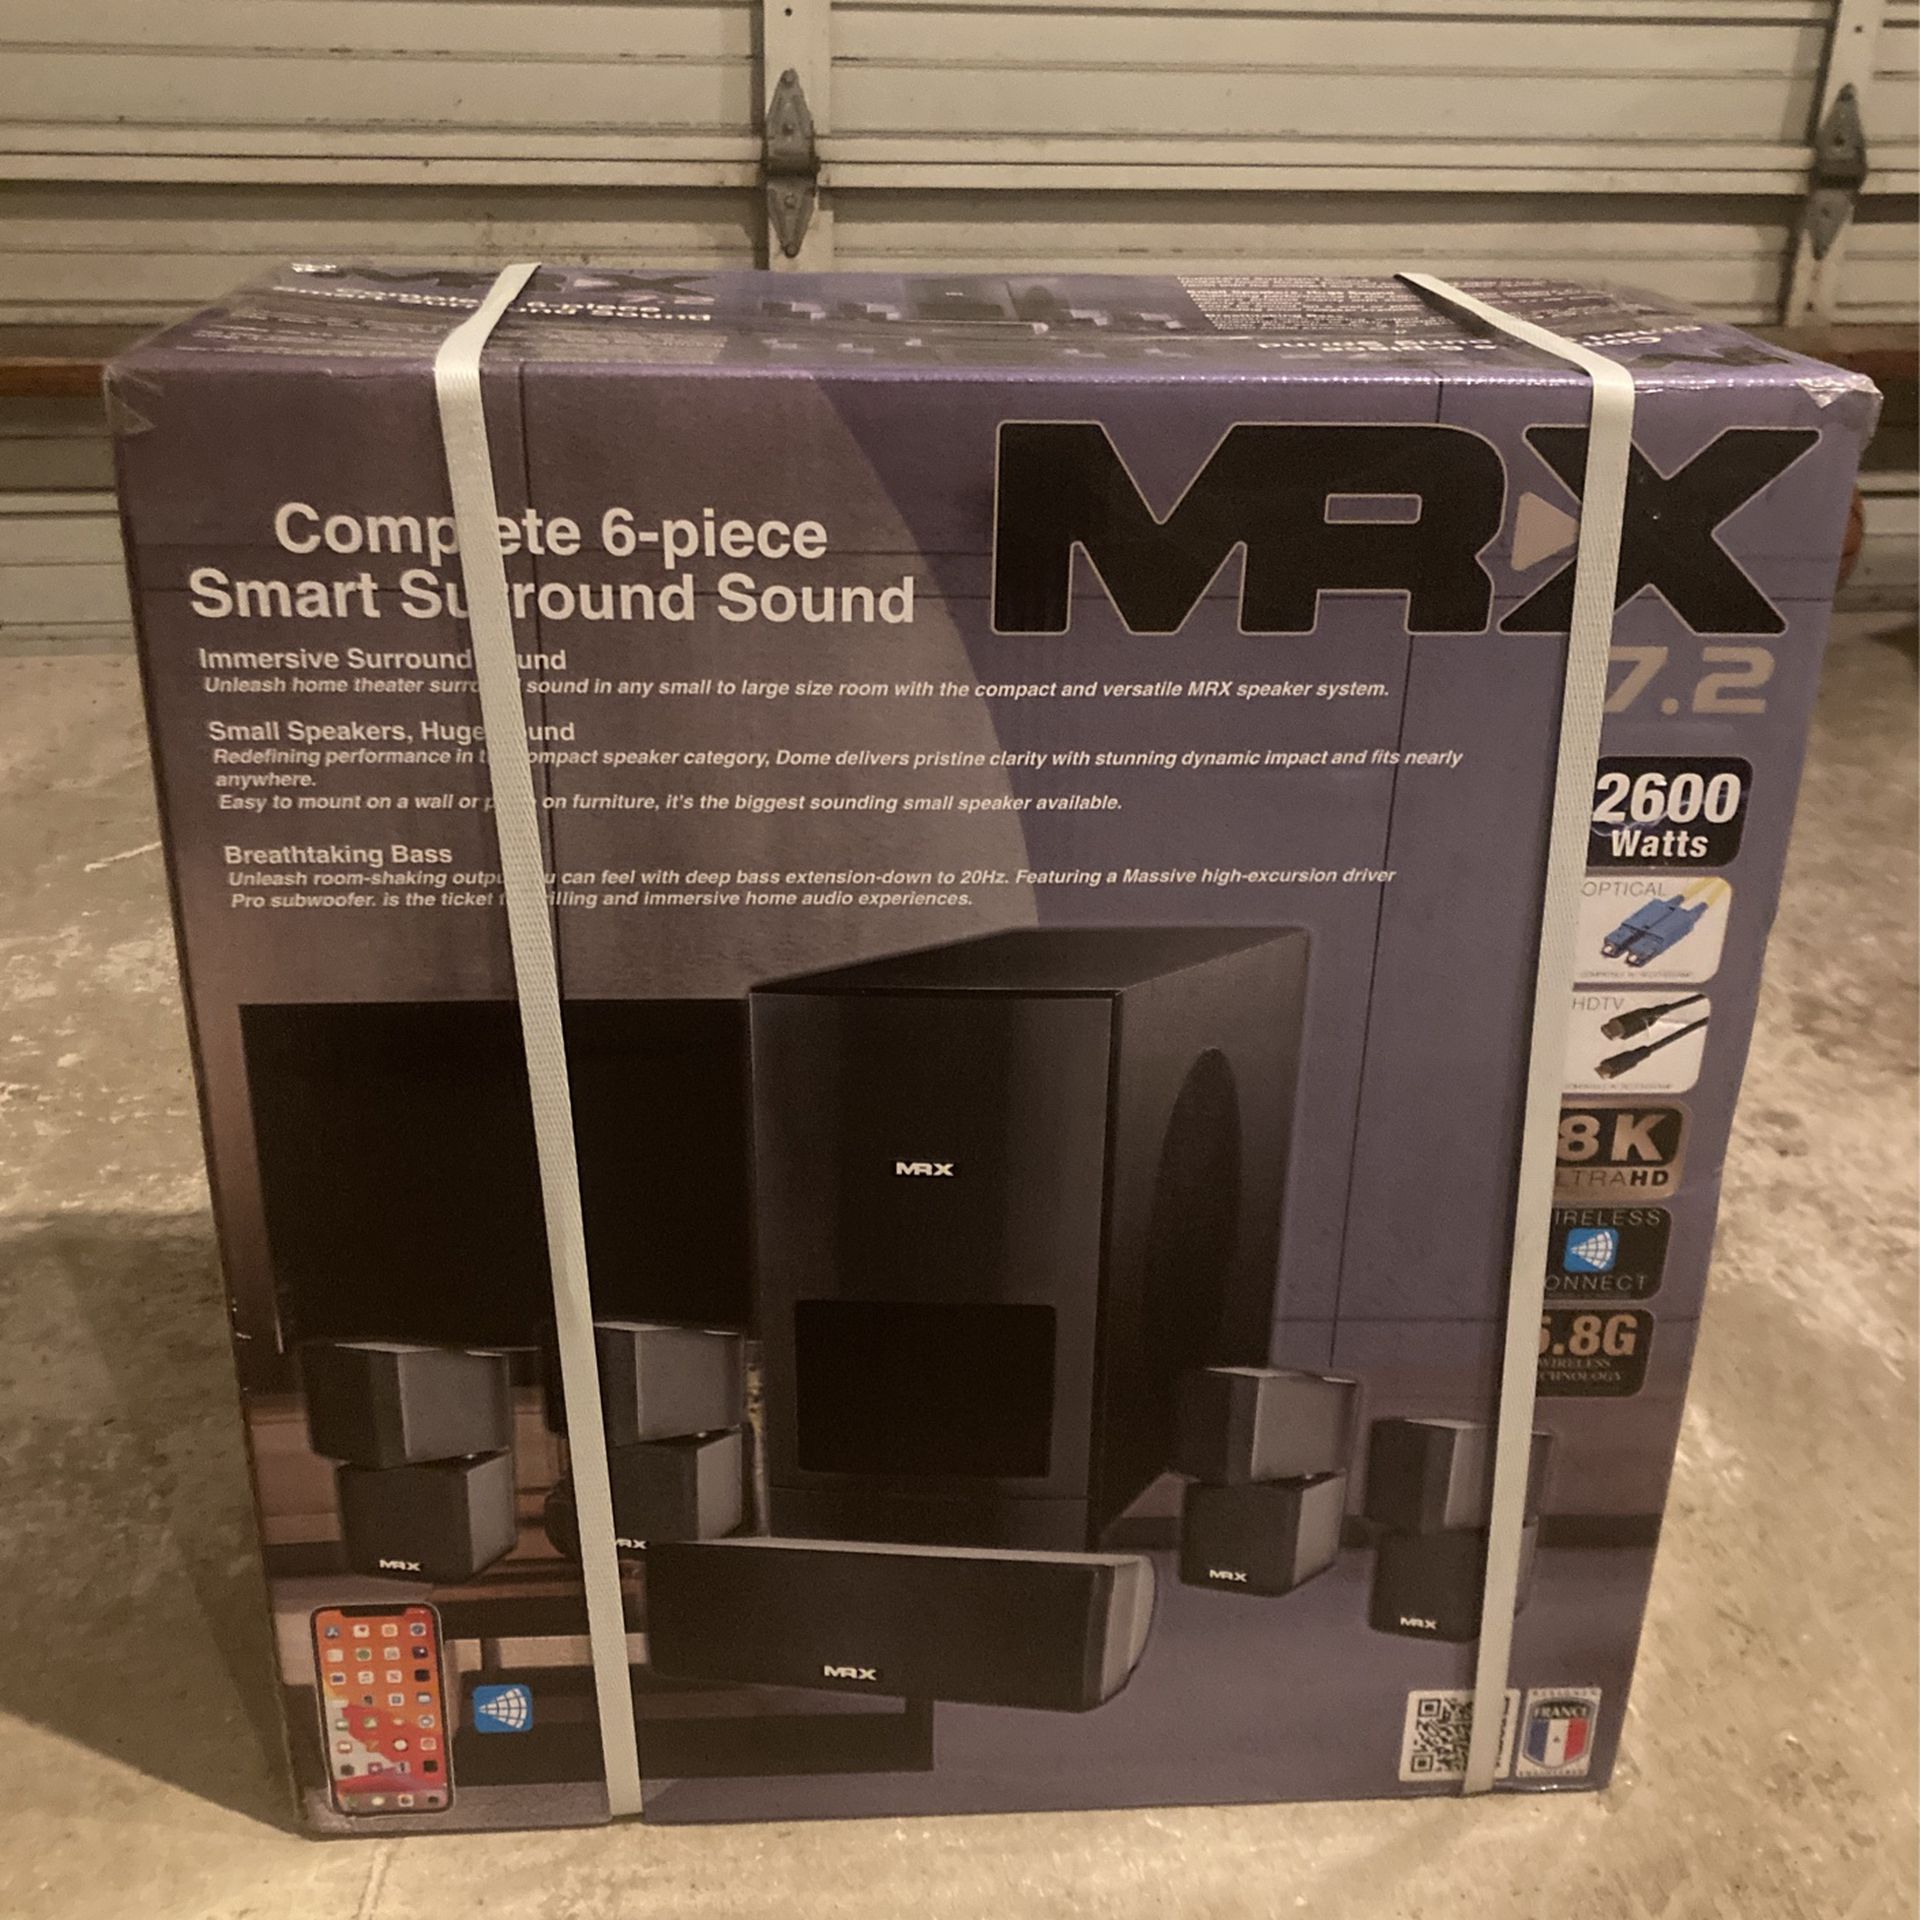 MR X 7.2 6 Piece Smart Surround Sound System